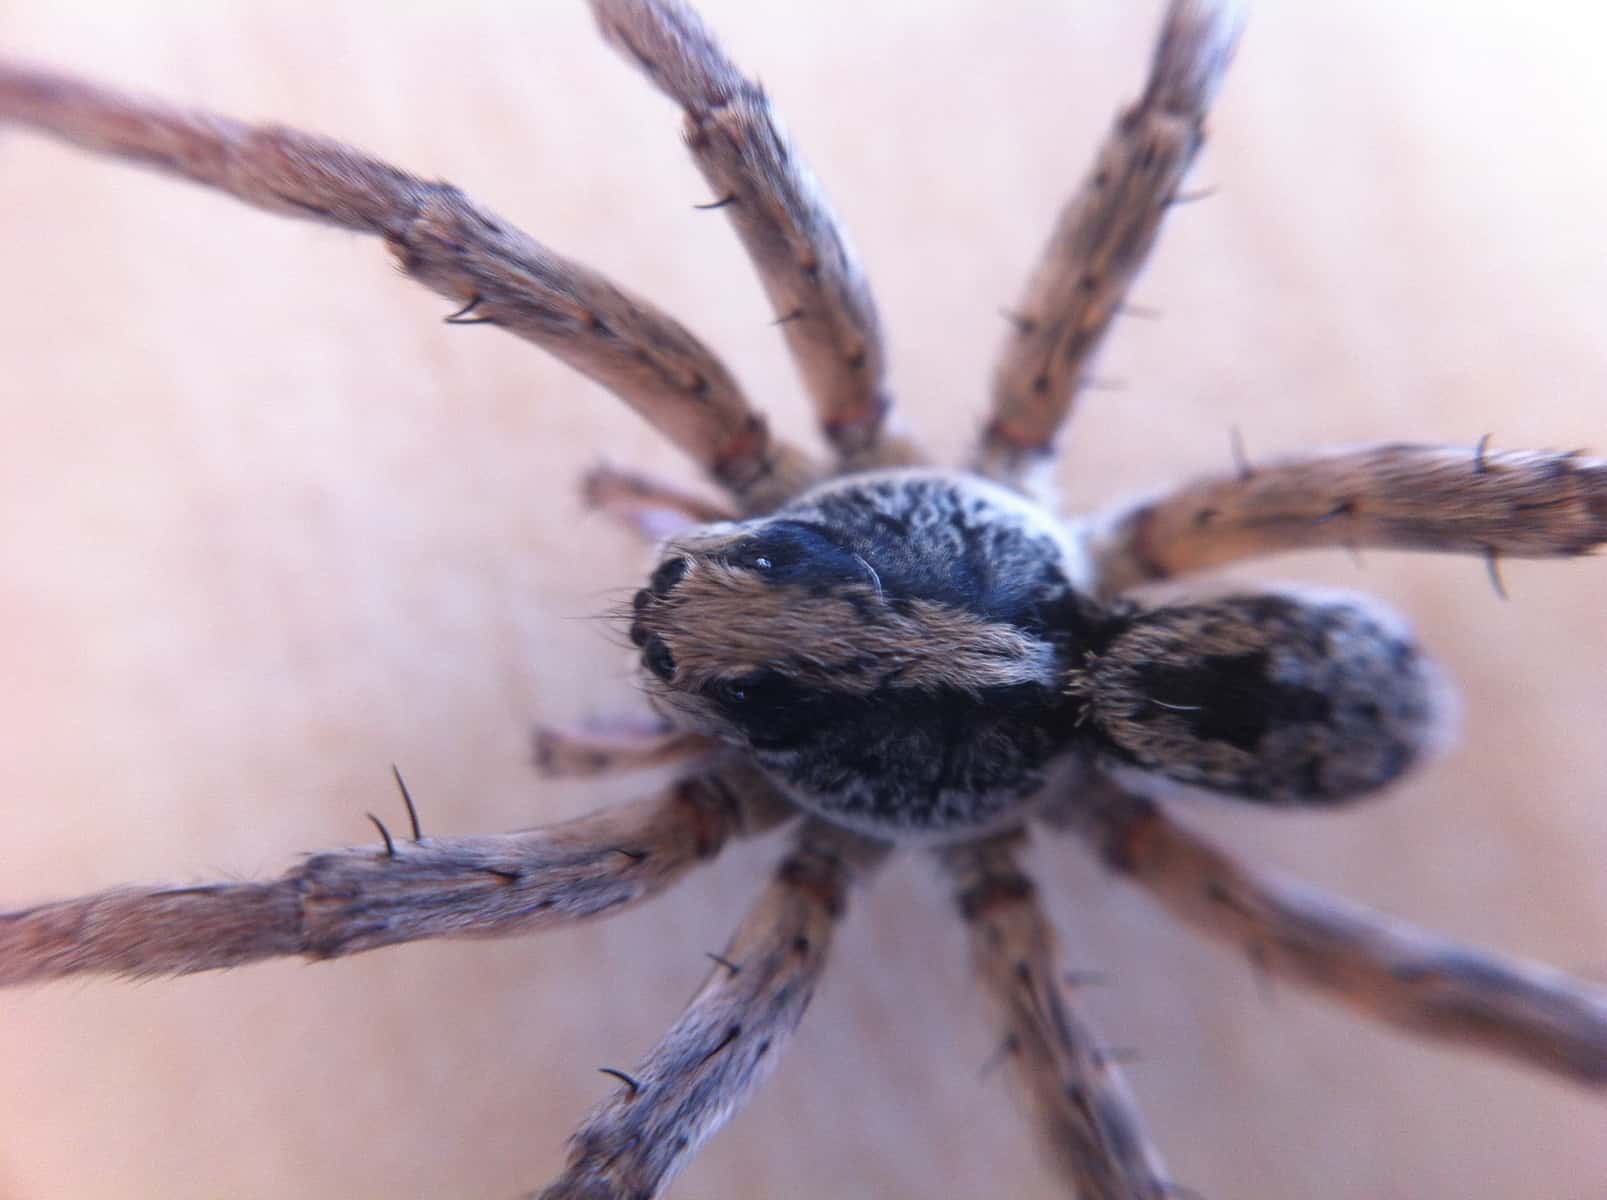 Spider Closeups